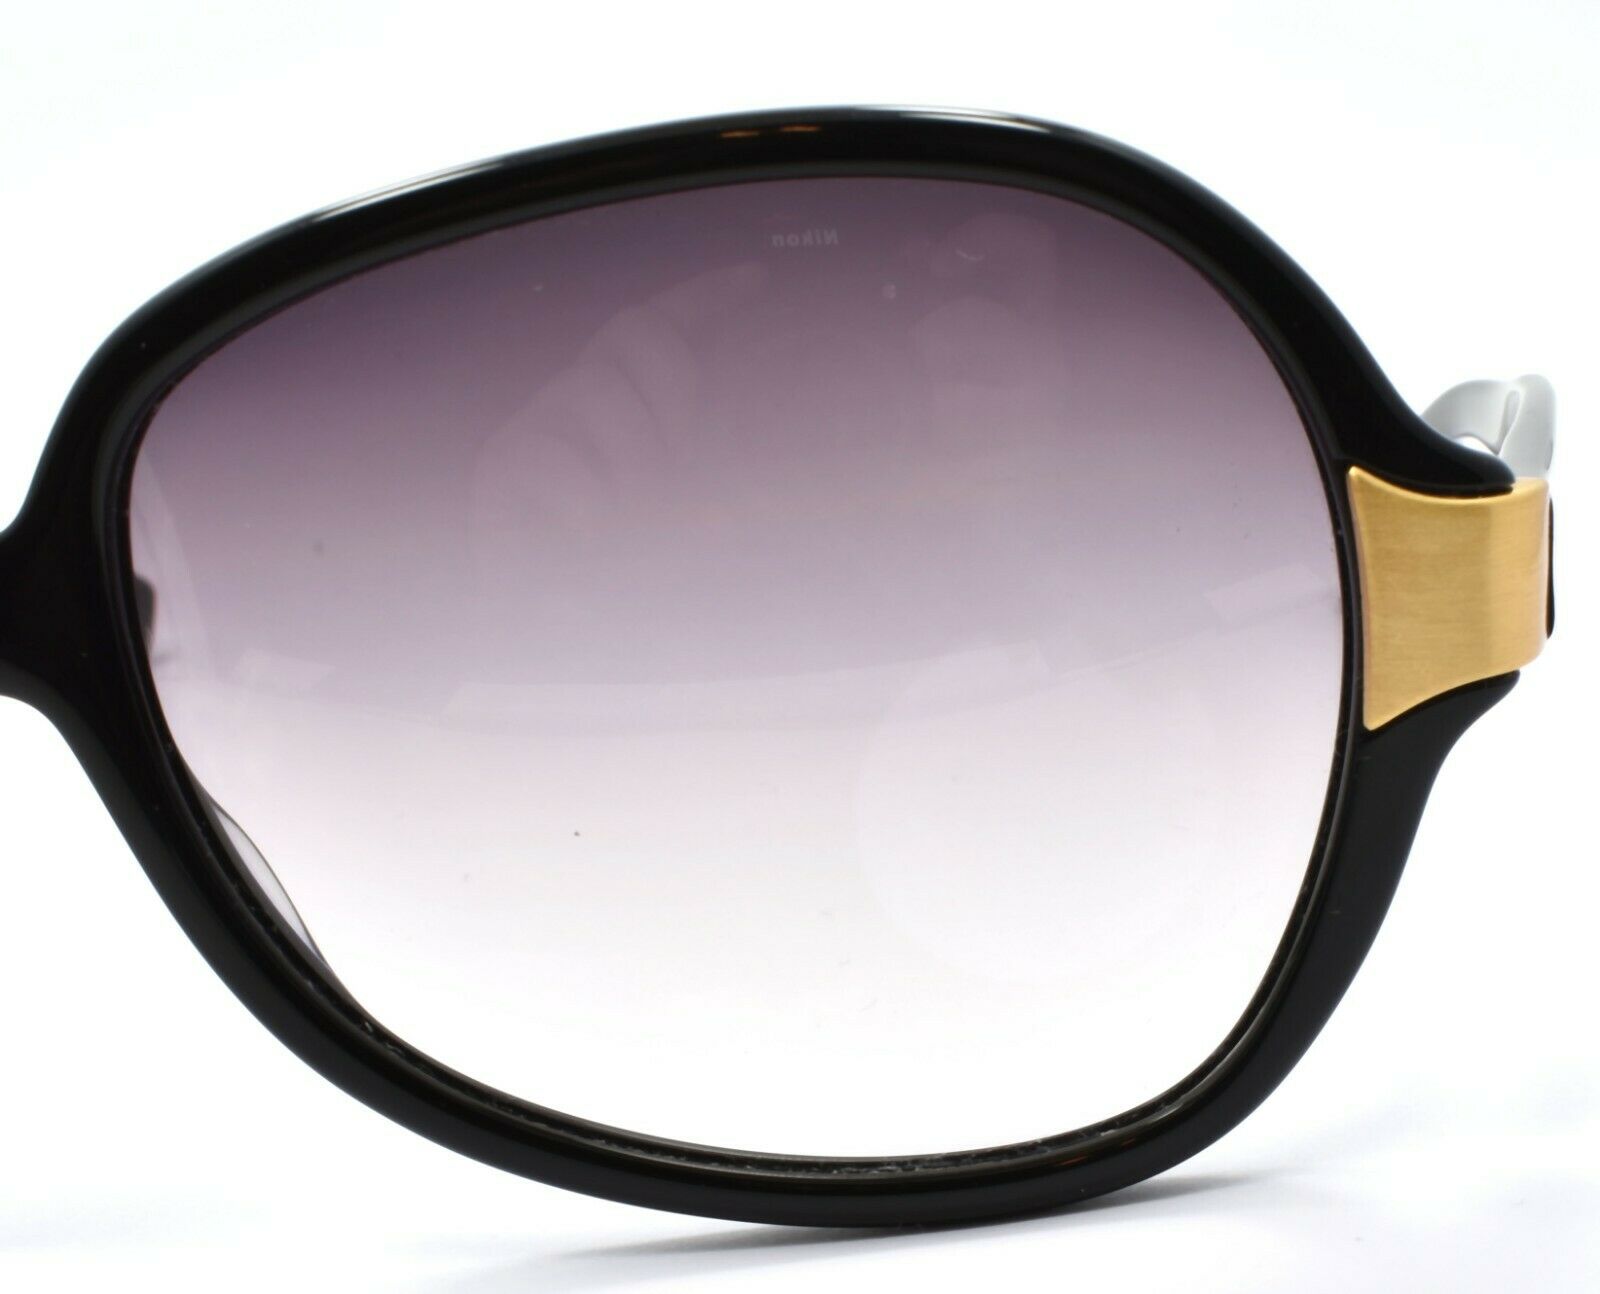 5-Oliver Peoples Leyla BK/G Women's Sunglasses Black / Violet Gradient JAPAN-Does not apply-IKSpecs